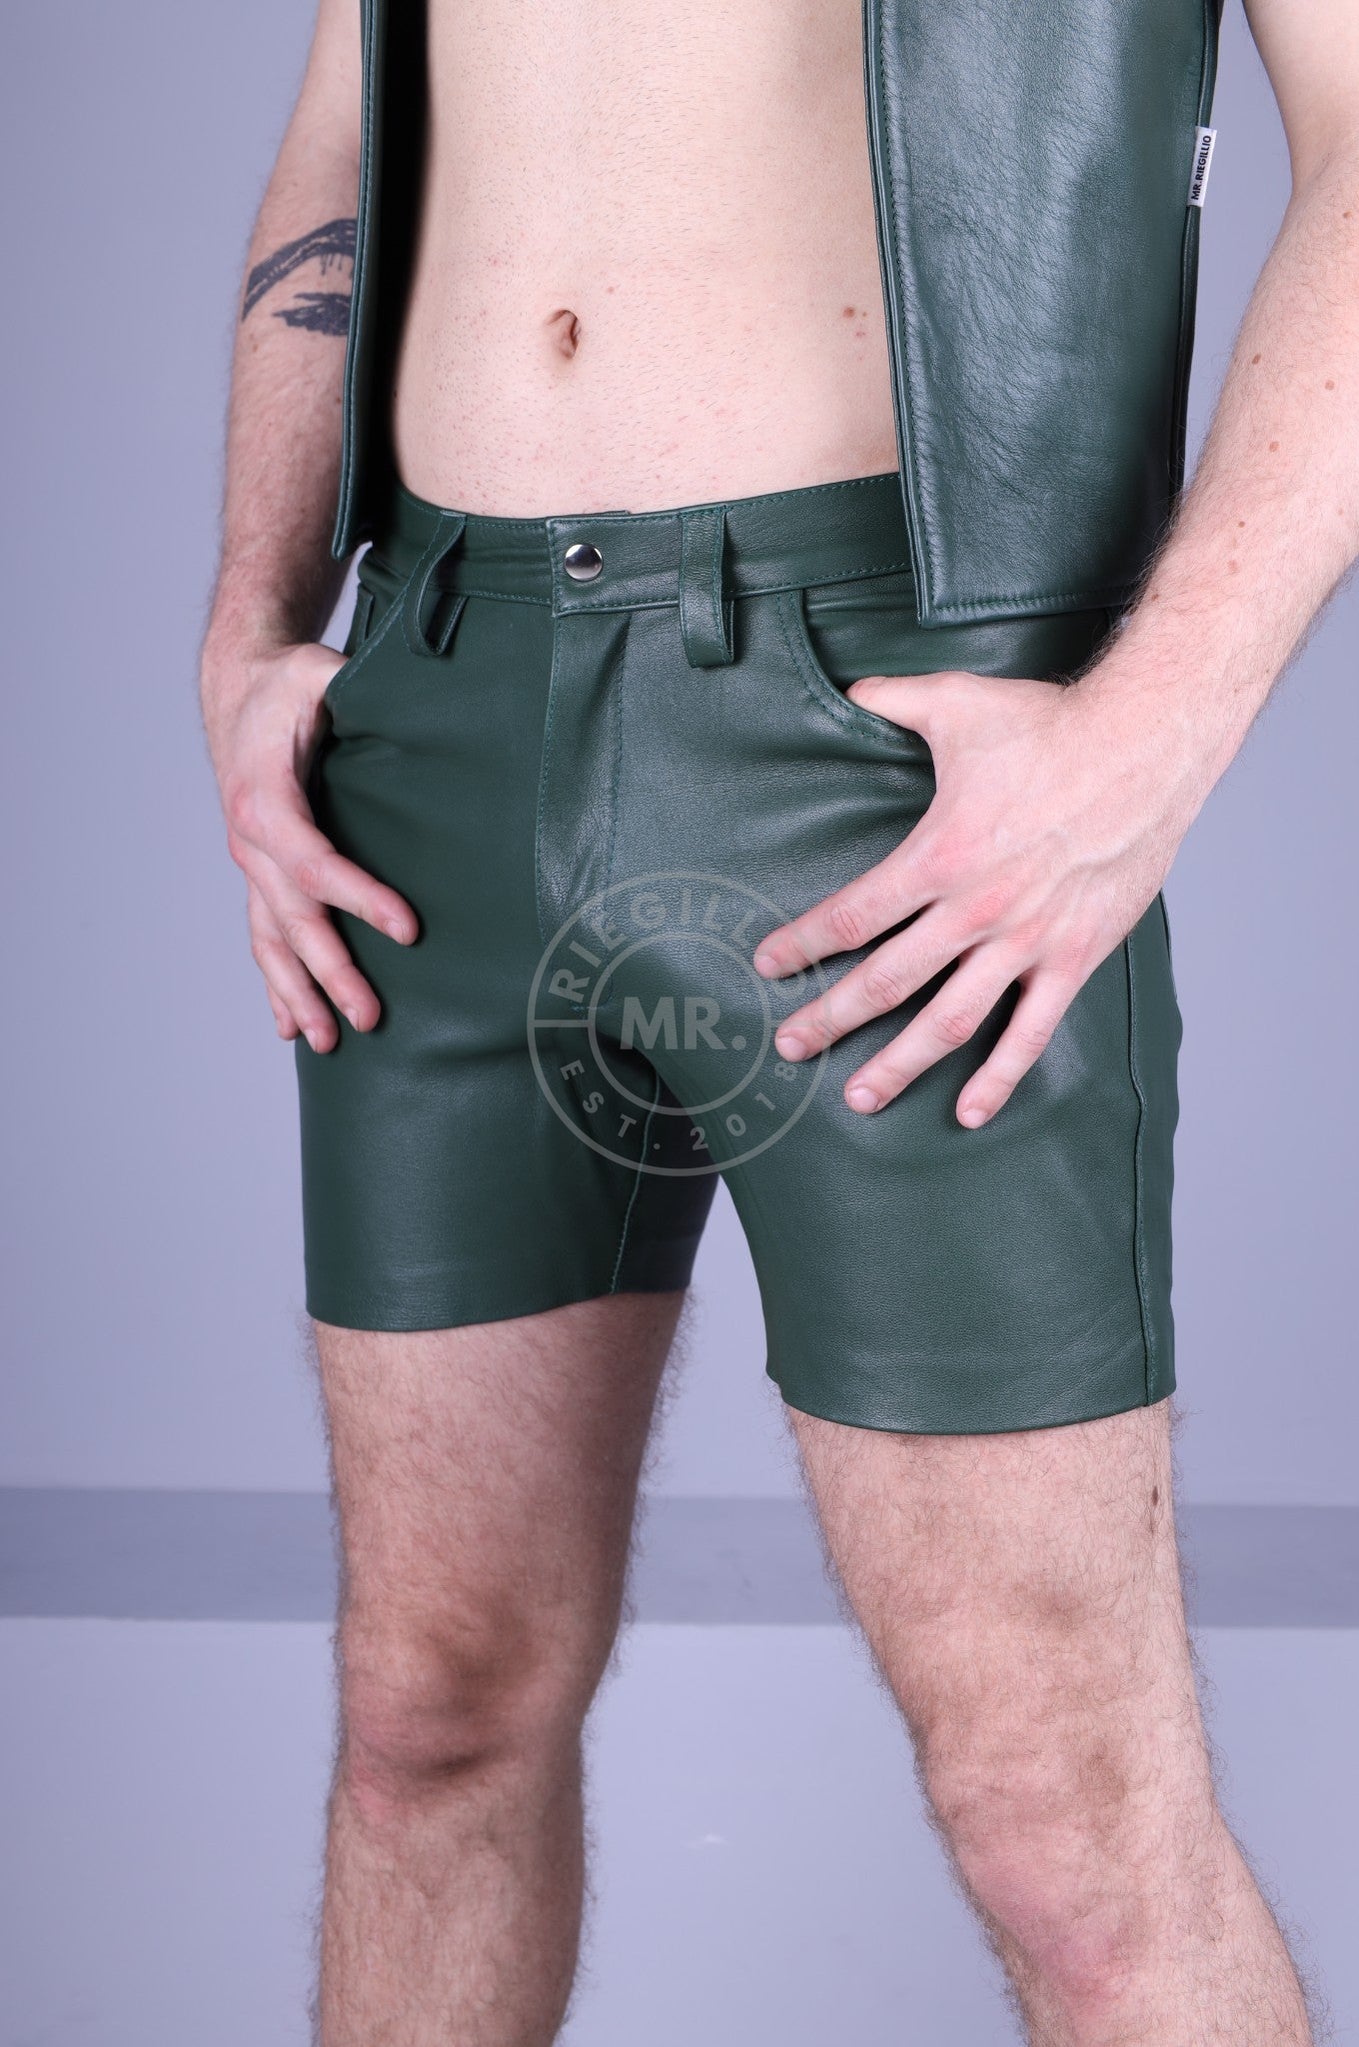 Leather 5 Pocket Short - Dark Green-at MR. Riegillio